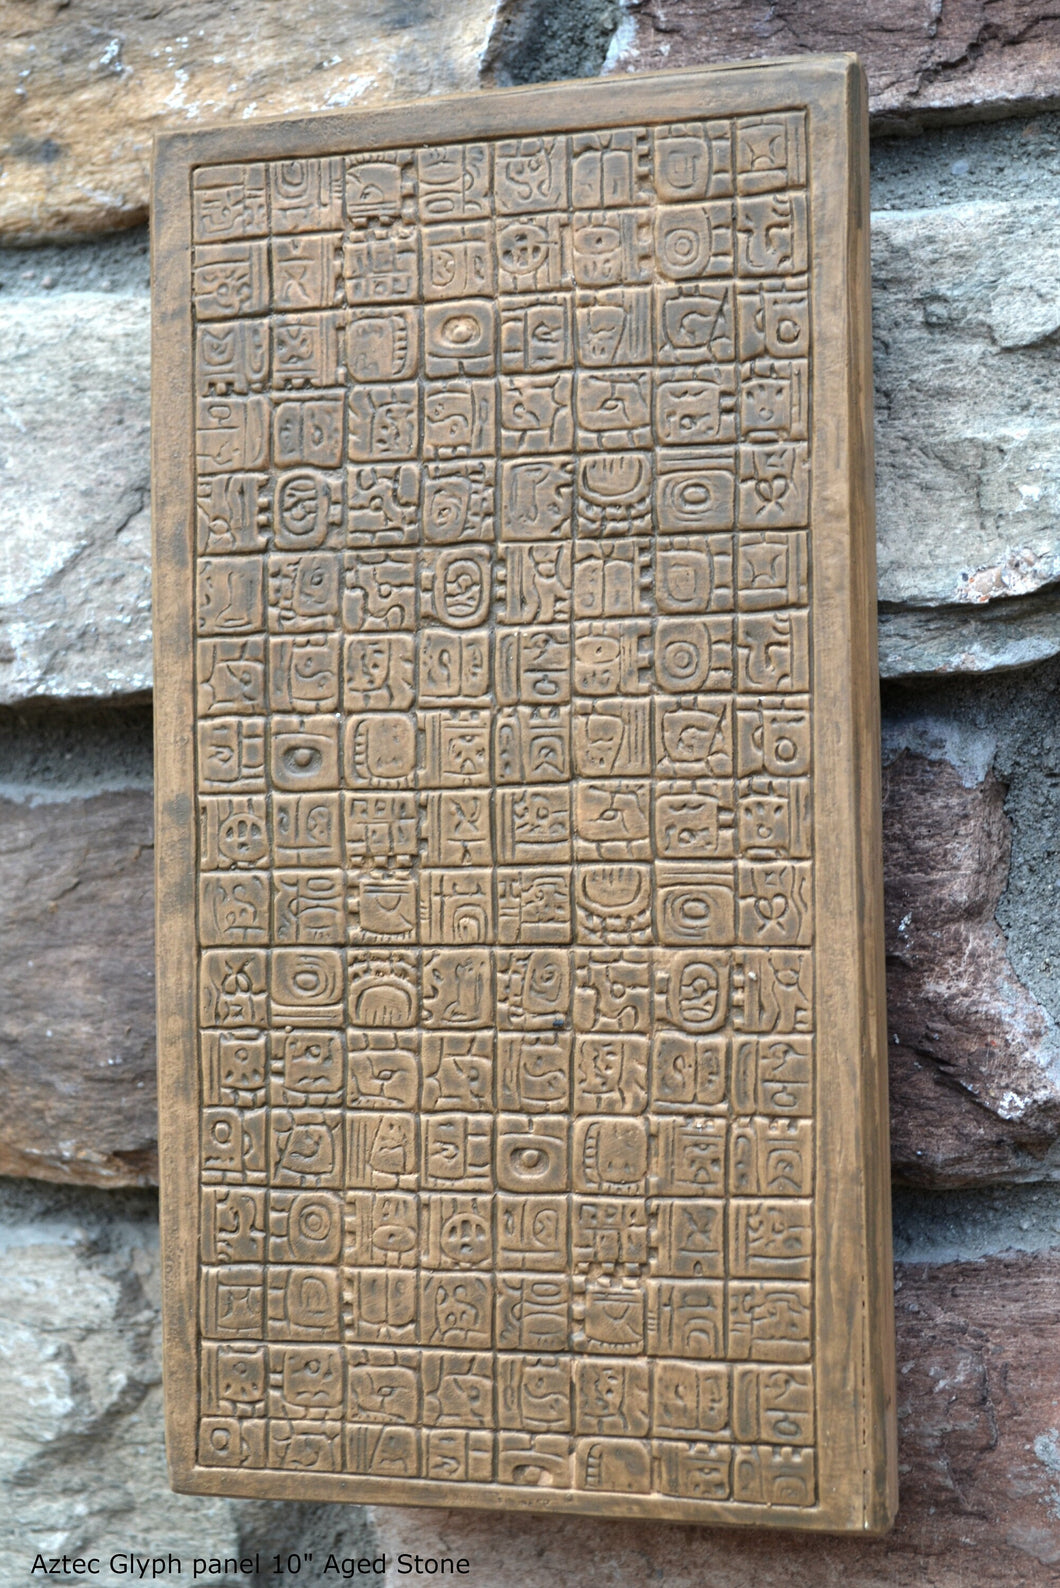 Aztec Mayan Glyph Panel Wall plaque Fragment relief www.Neo-Mfg.com 10